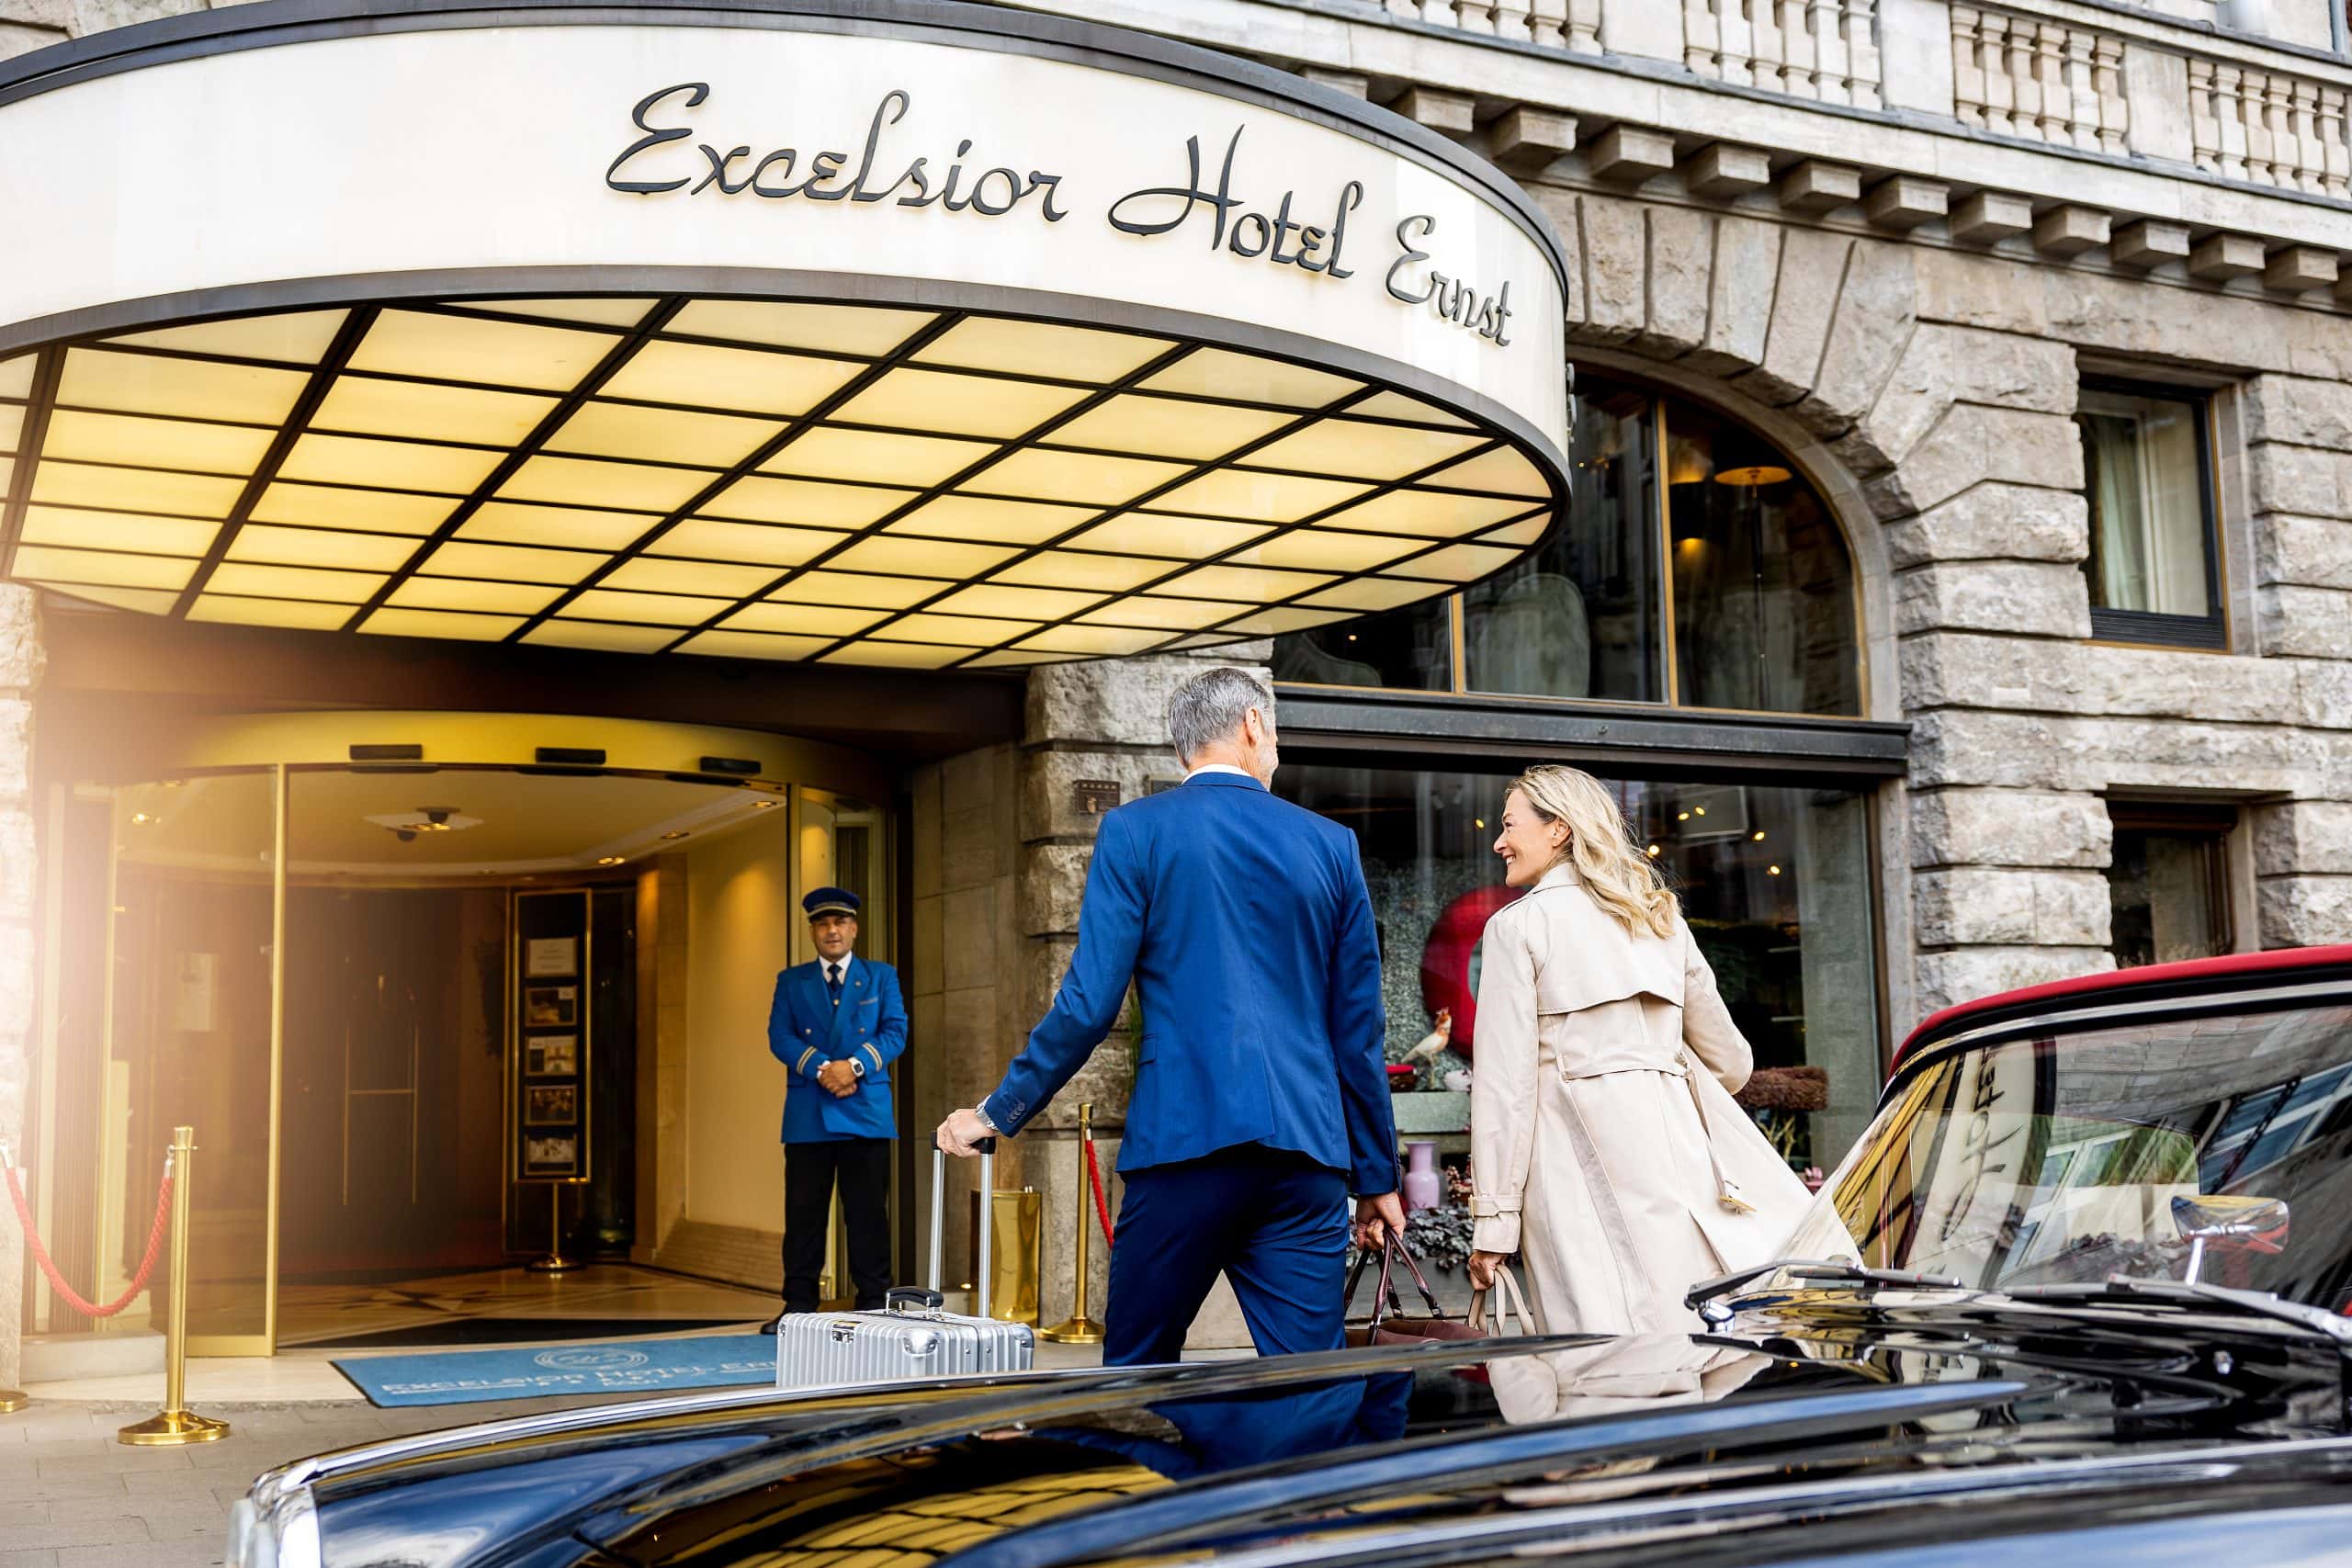 Entrance of 5 star Excelsior Hotel Ernst